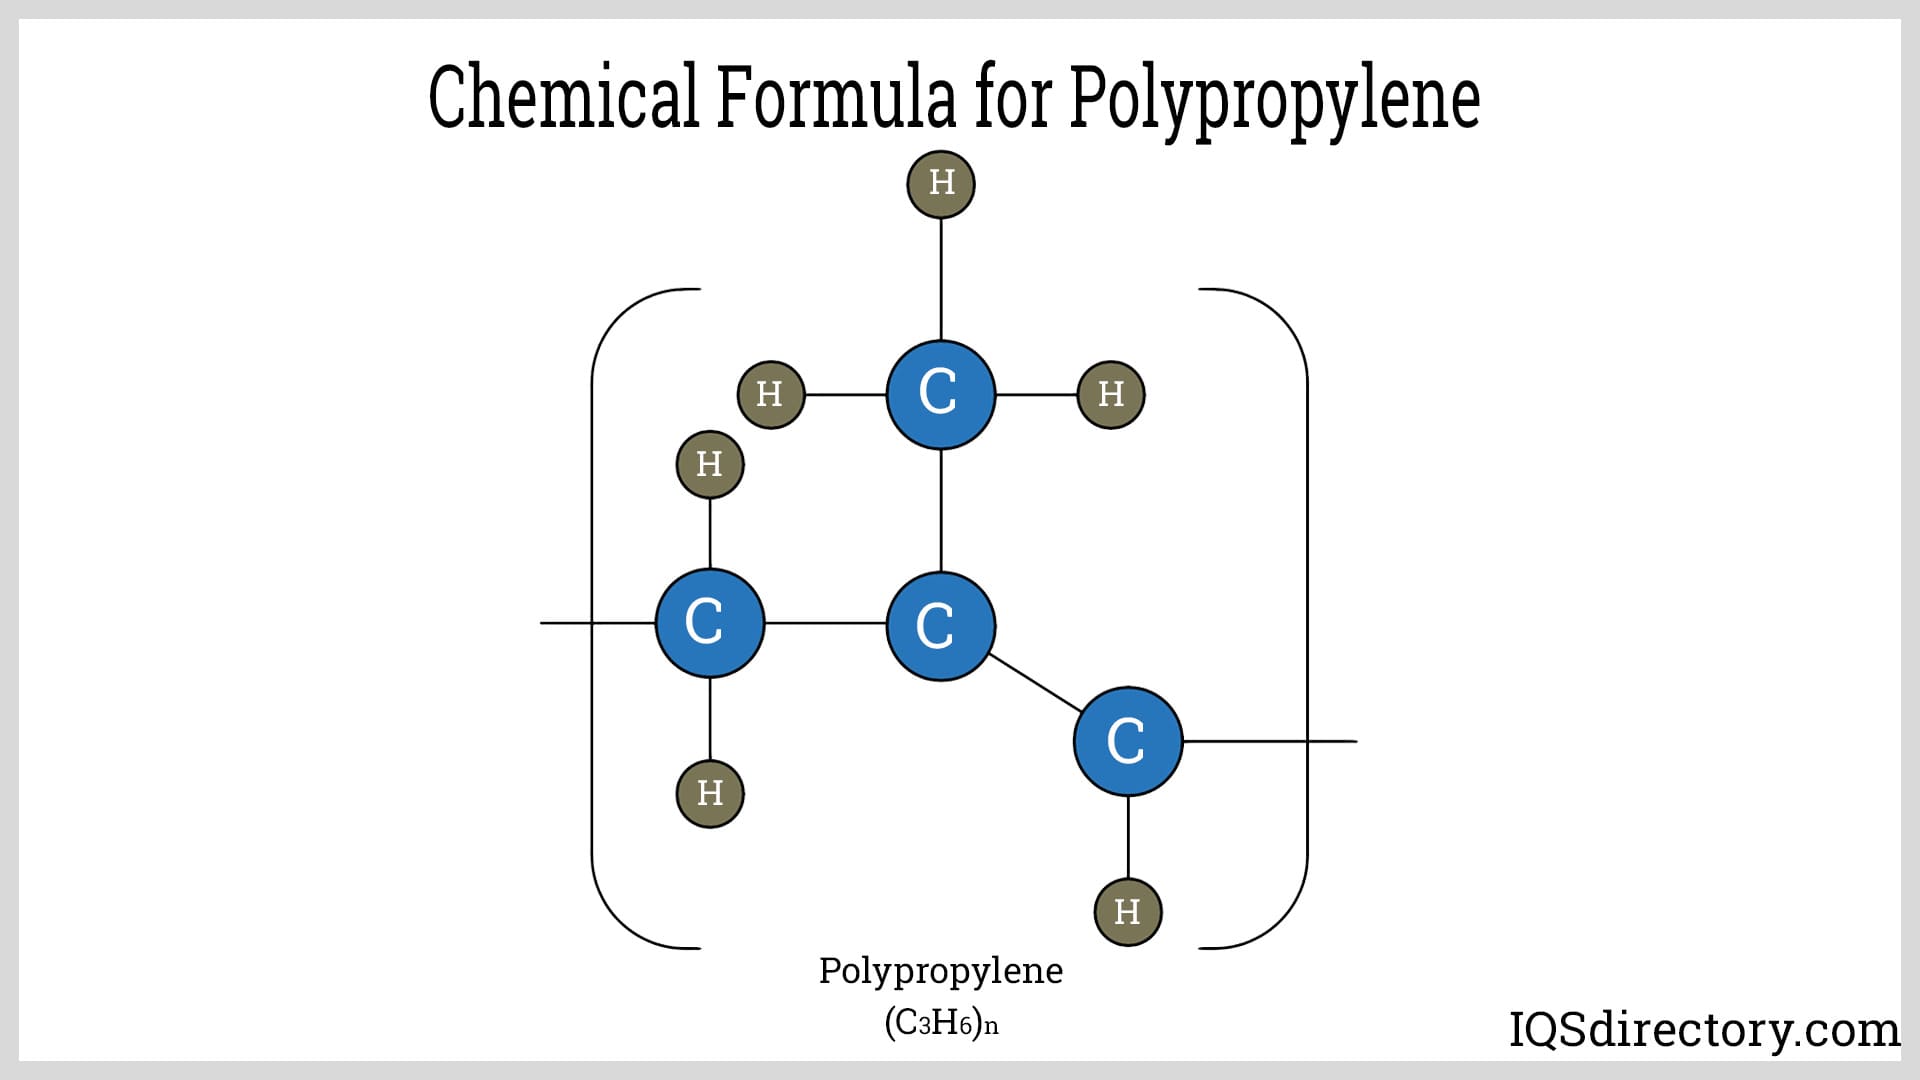 Chemical Formula for Polypropylene